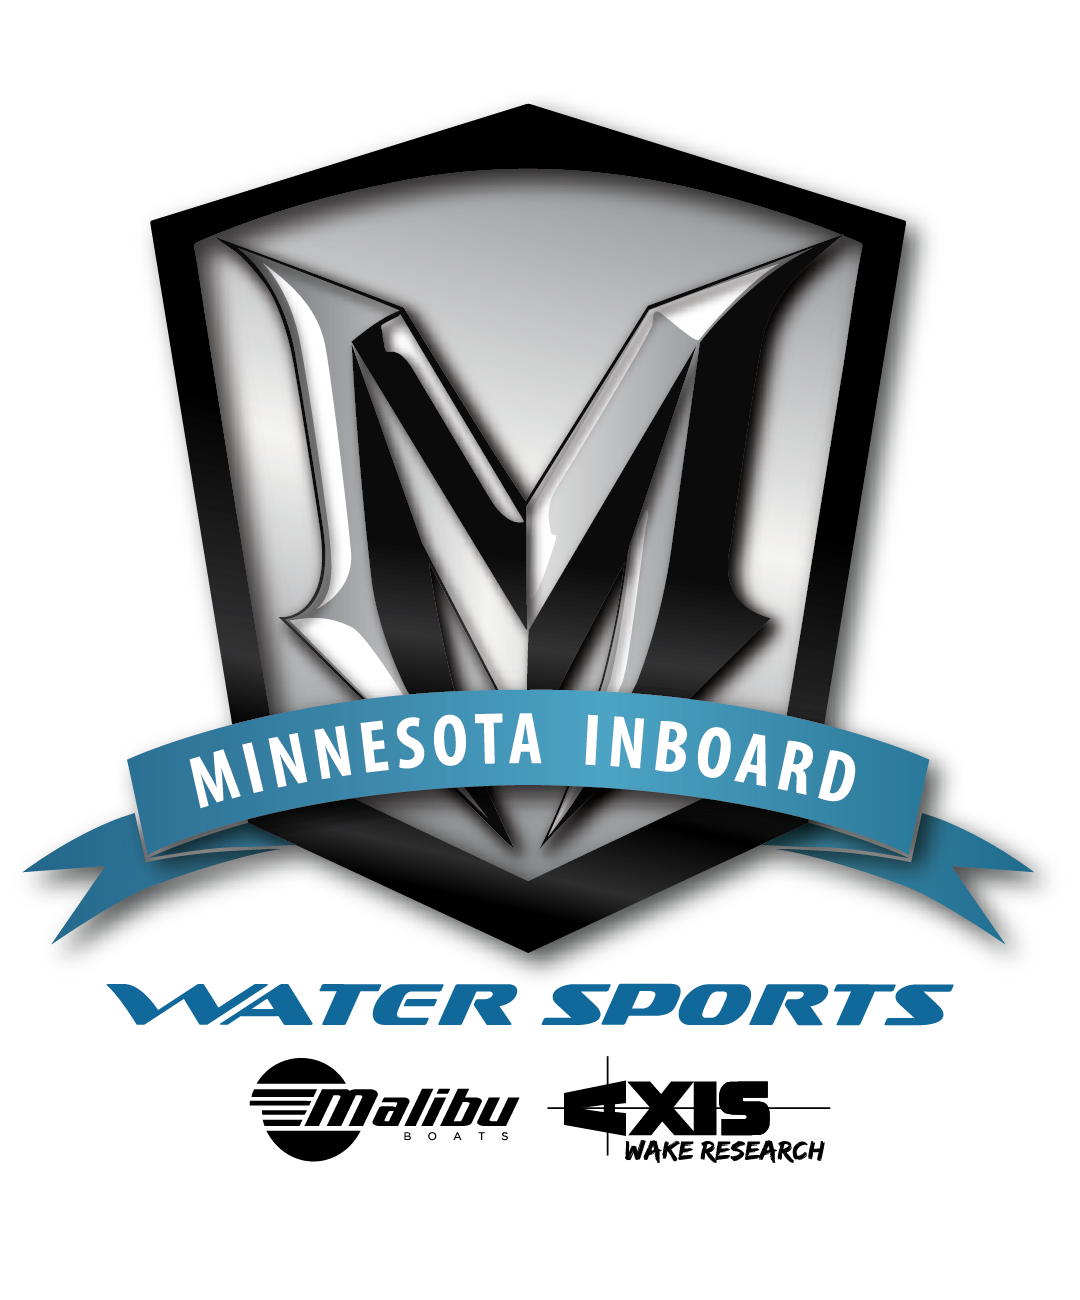 Minnesota Inboard vodeni sportovi